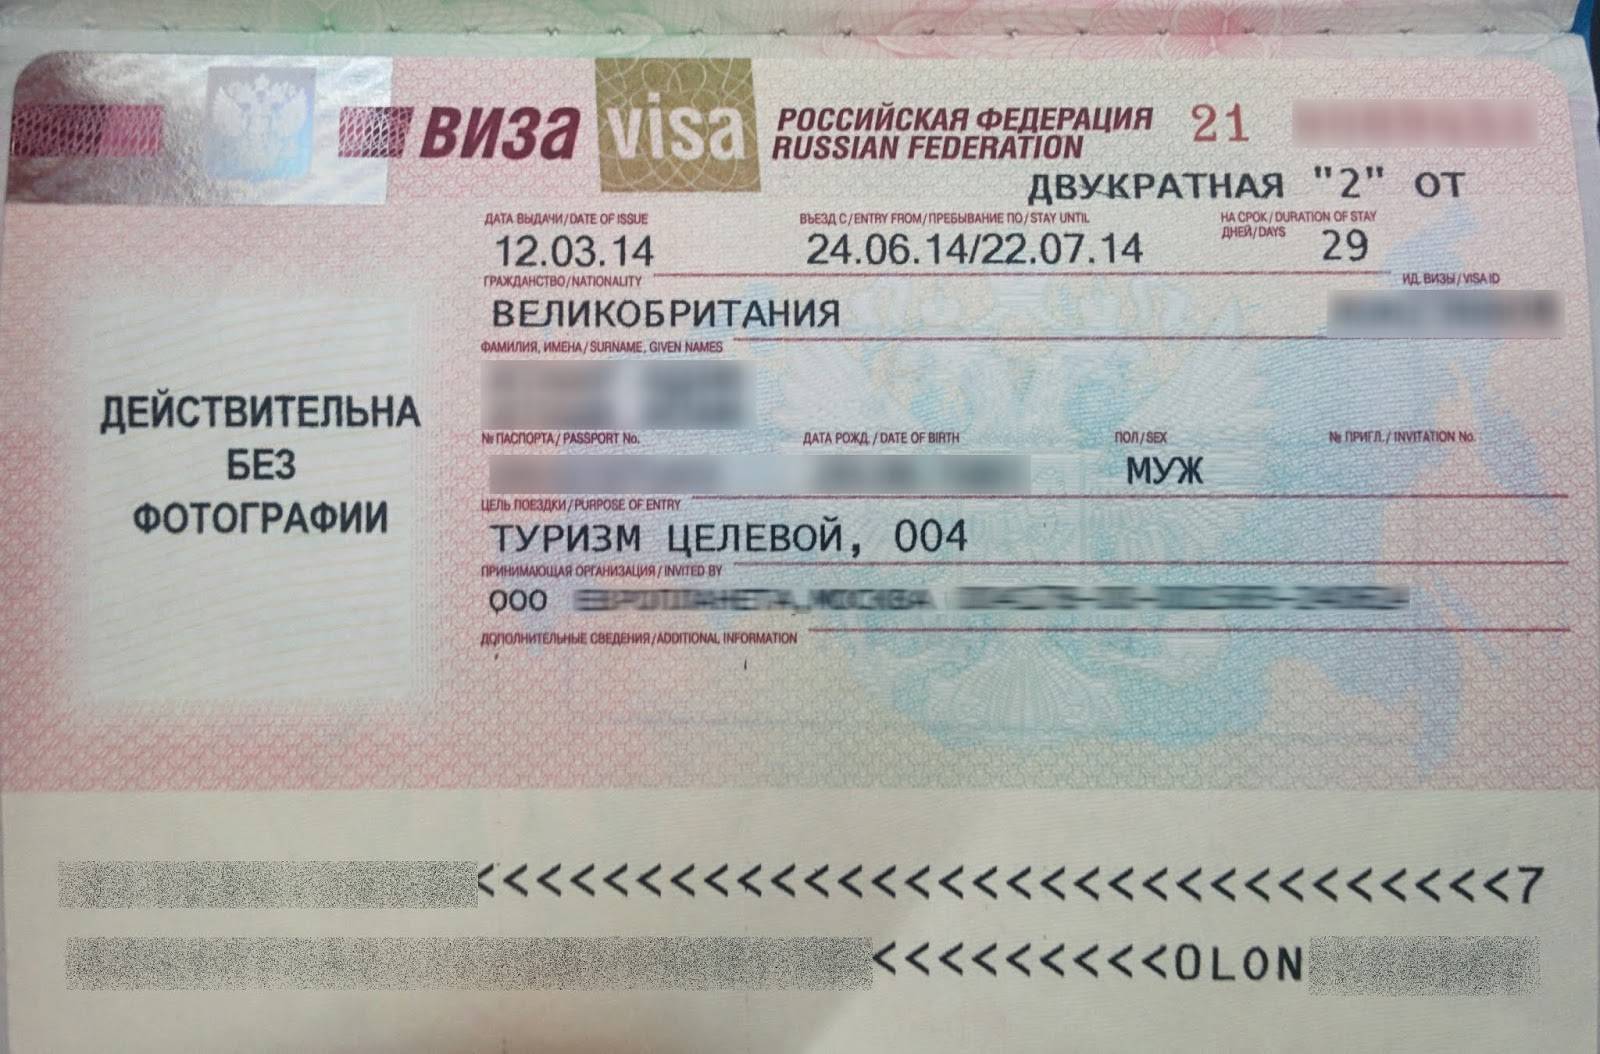 Как получить рабочую визу в германию и сколько стоит оформление для россиян и украинцев?